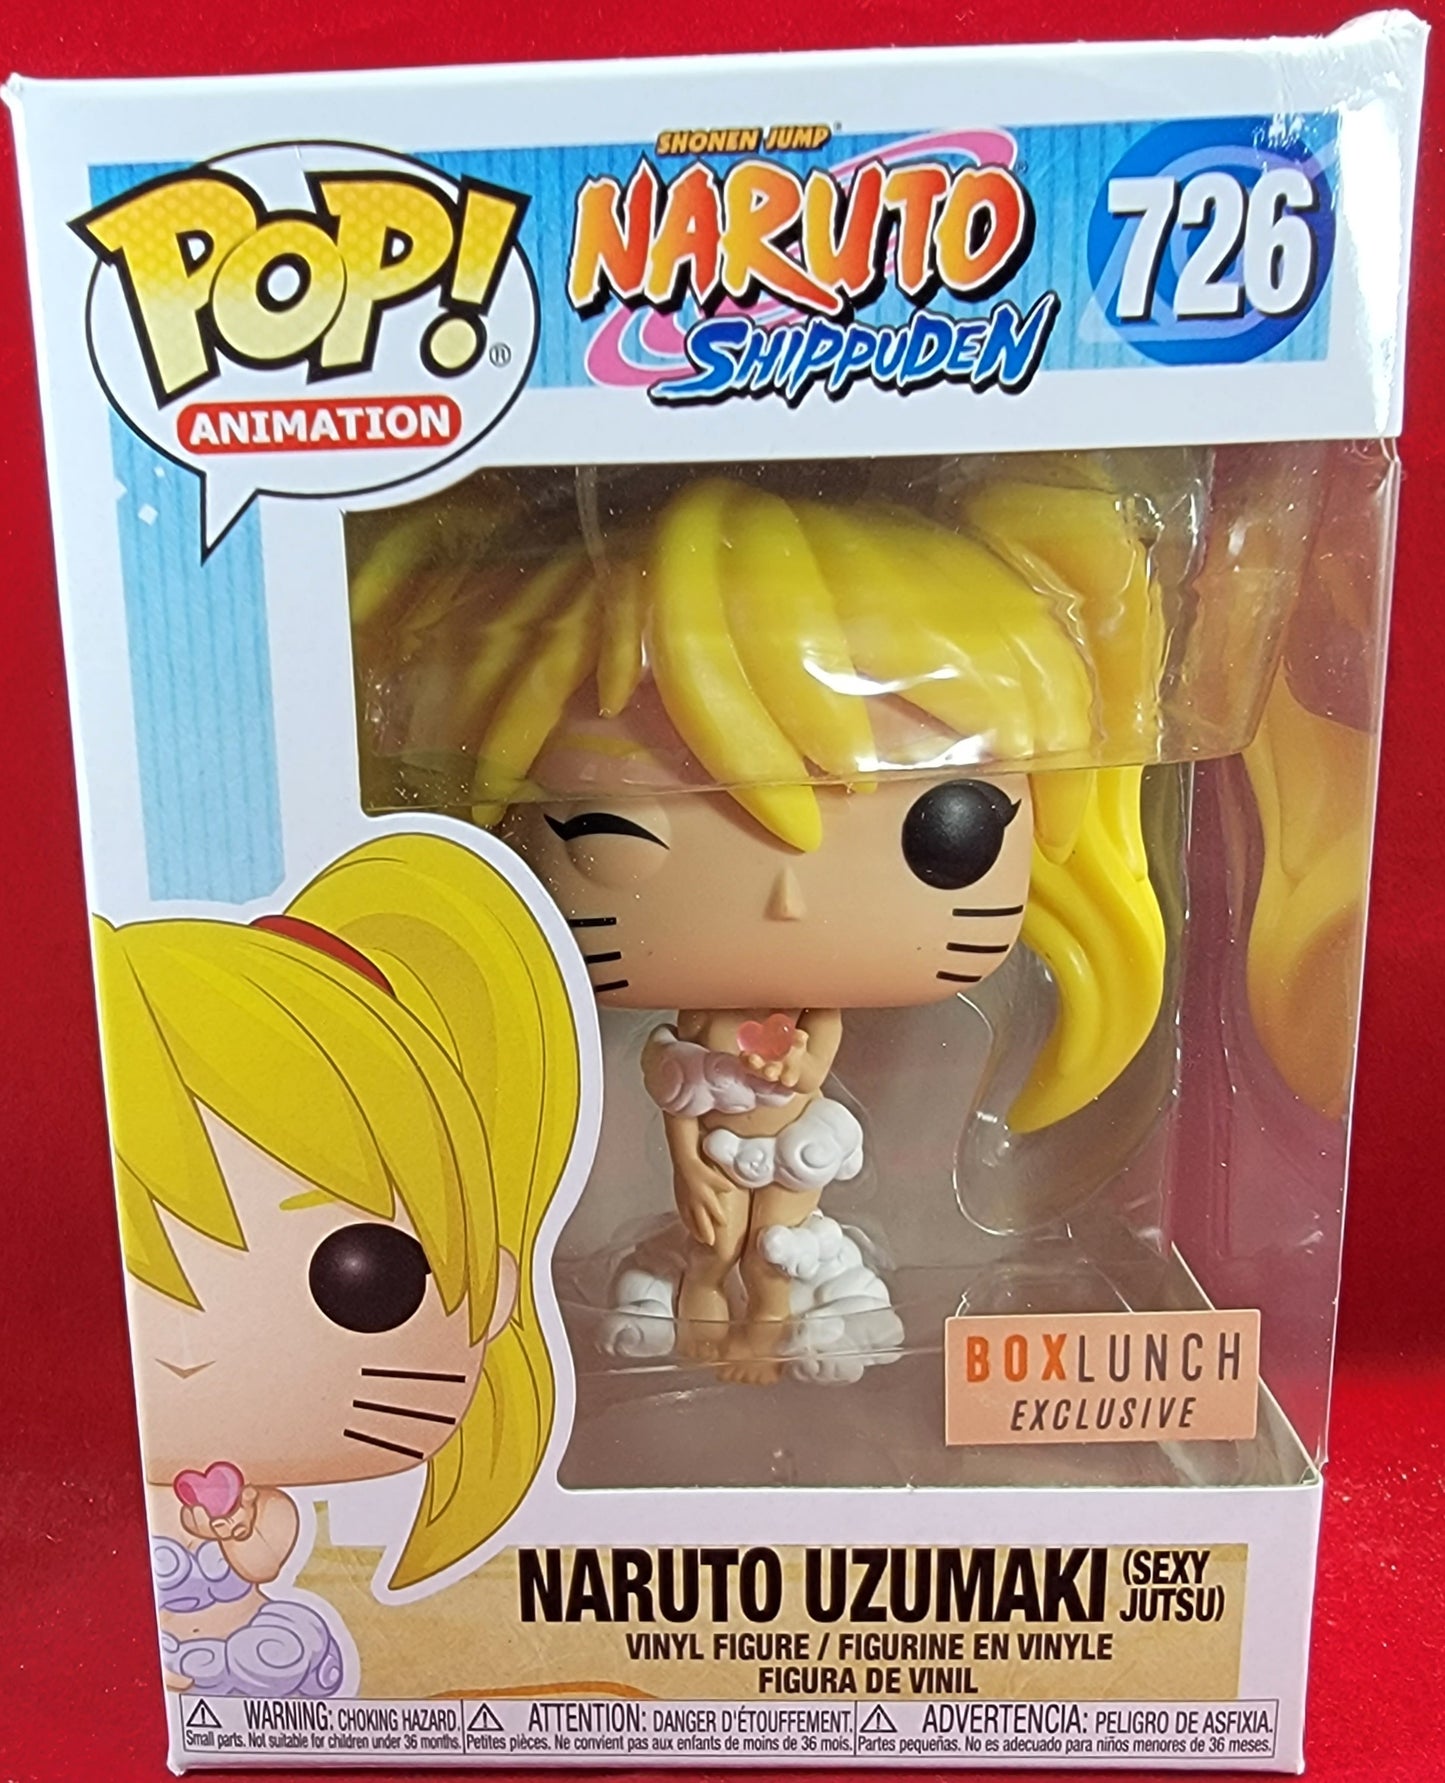 Naruto uzumaki sexy jutsu boxlunch exclusive funko # 726 (nib)